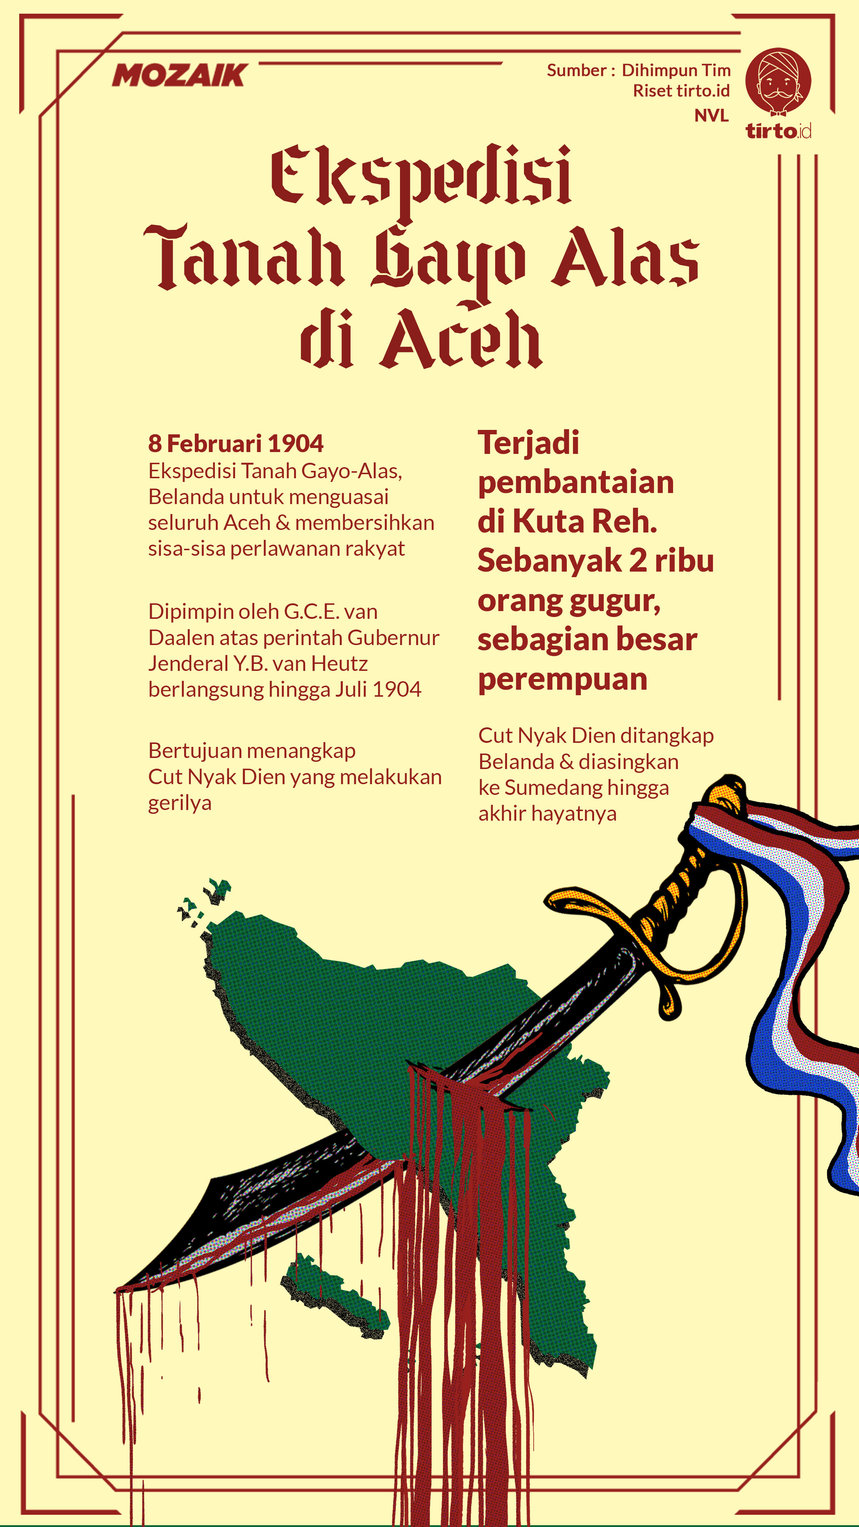 Infografik Mozaik Ekspedisi Tanah Gayo Alas di Aceh